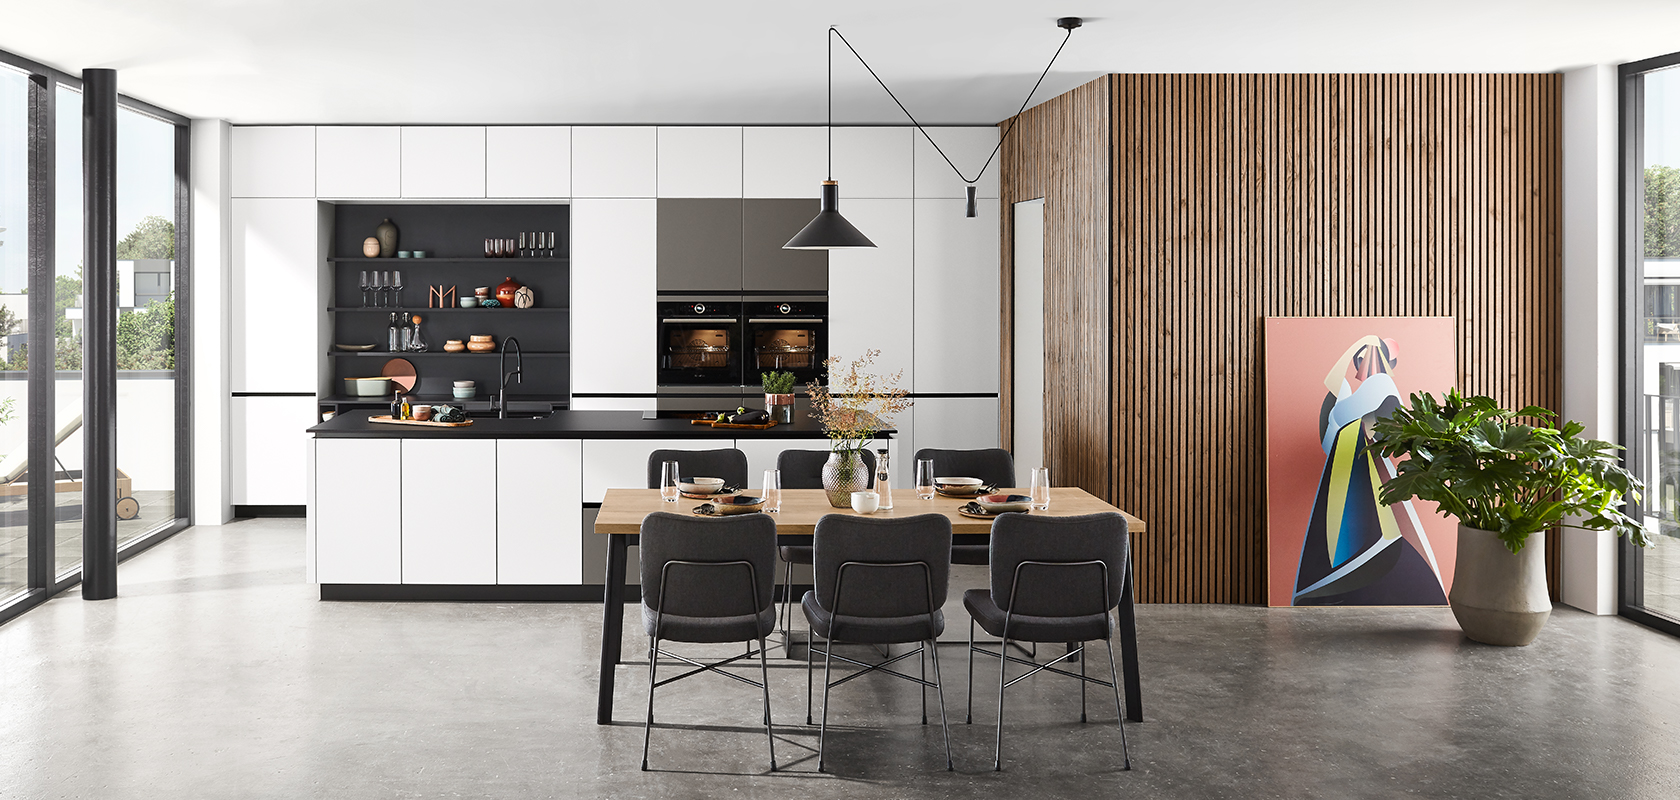 Moderní kuchyňský interiér s elegantními černobílými skříněmi, dřevěnými doplňky a jídelním prostorem s stylovým nábytkem pod elegantními závěsnými lampami.